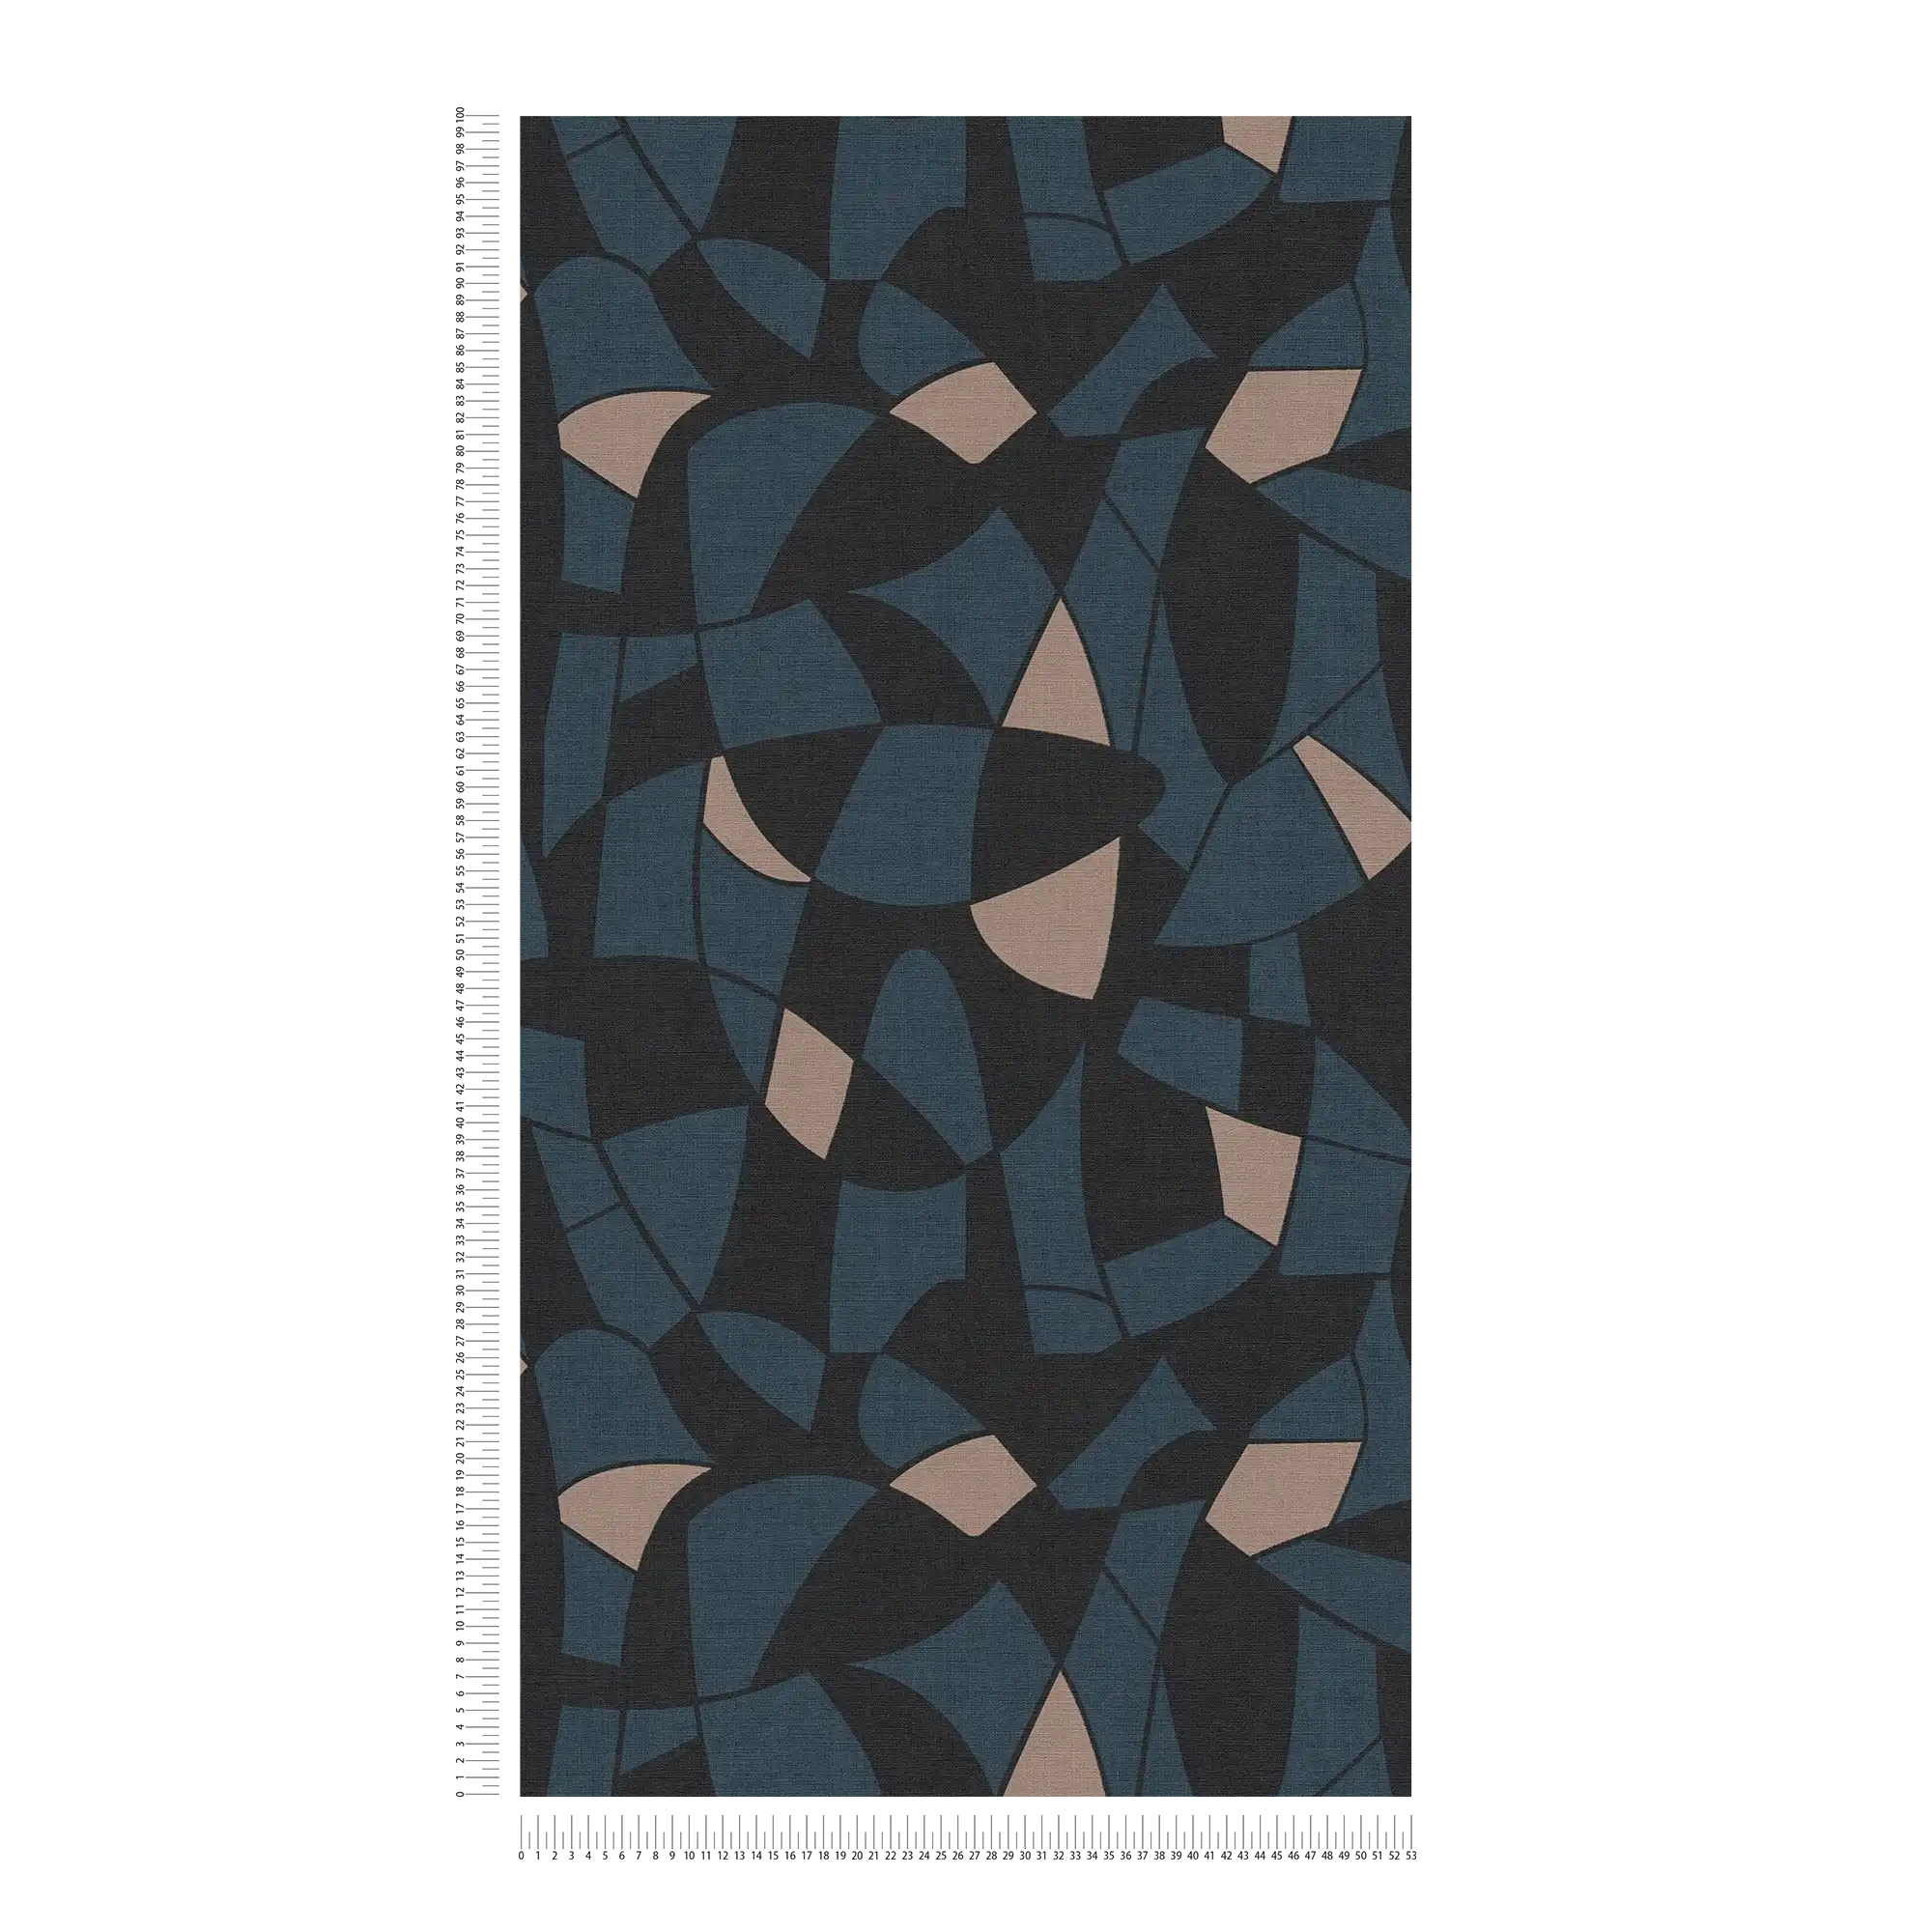             Vliestapete in dunklen Farben im abstrakten Muster – Schwarz, Blau, Beige
        